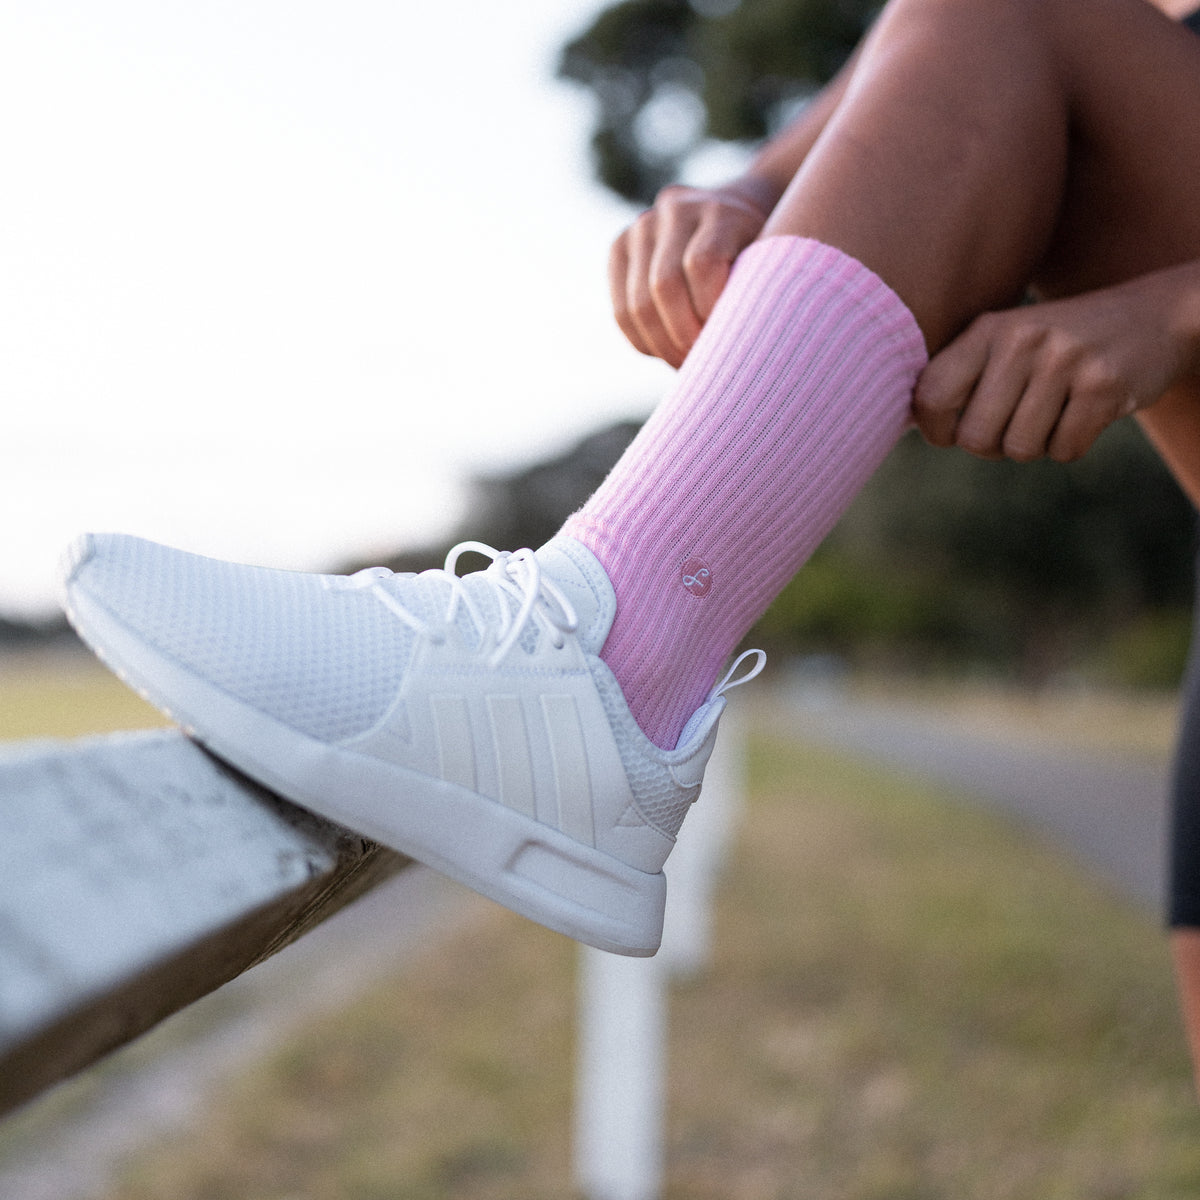 Pink Merino Wool Sports Swanky Socks